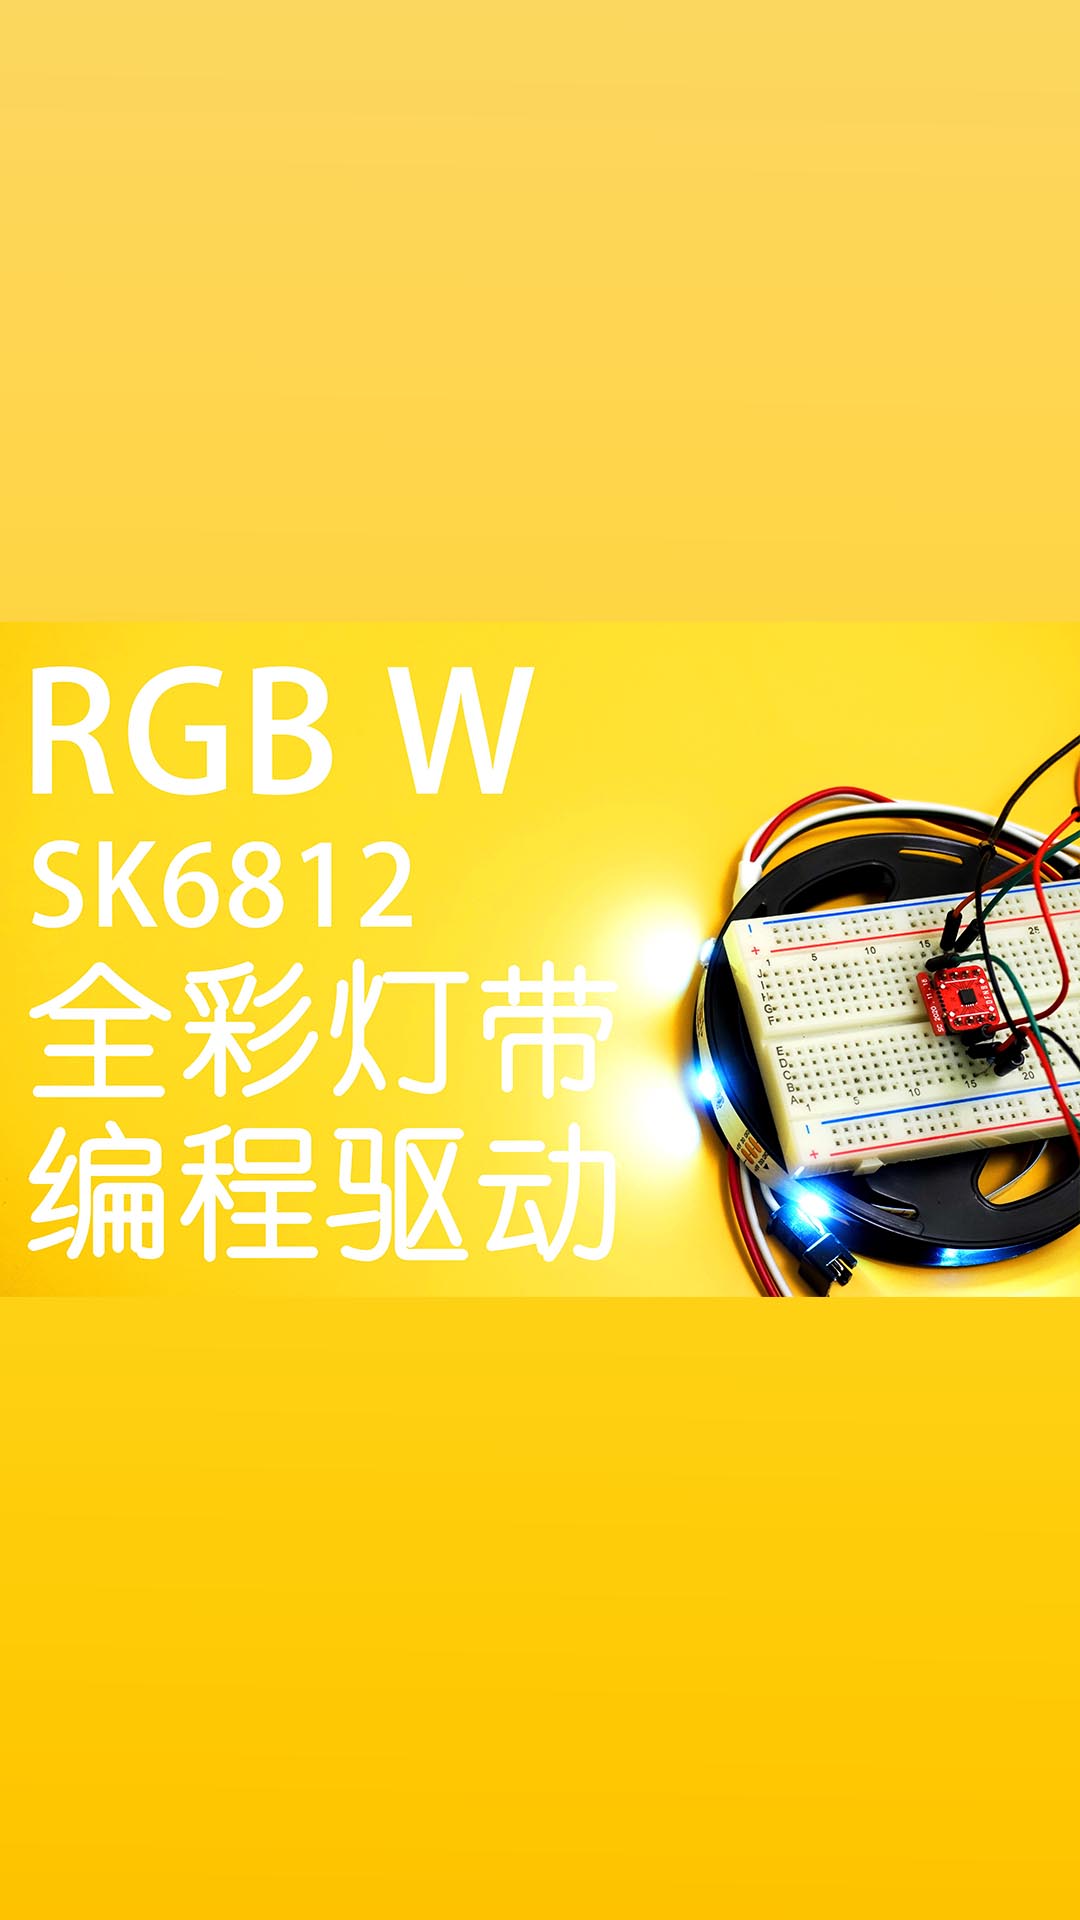 驱动SK6812全彩灯带，只要两个子程序就能搞定。#驱动 